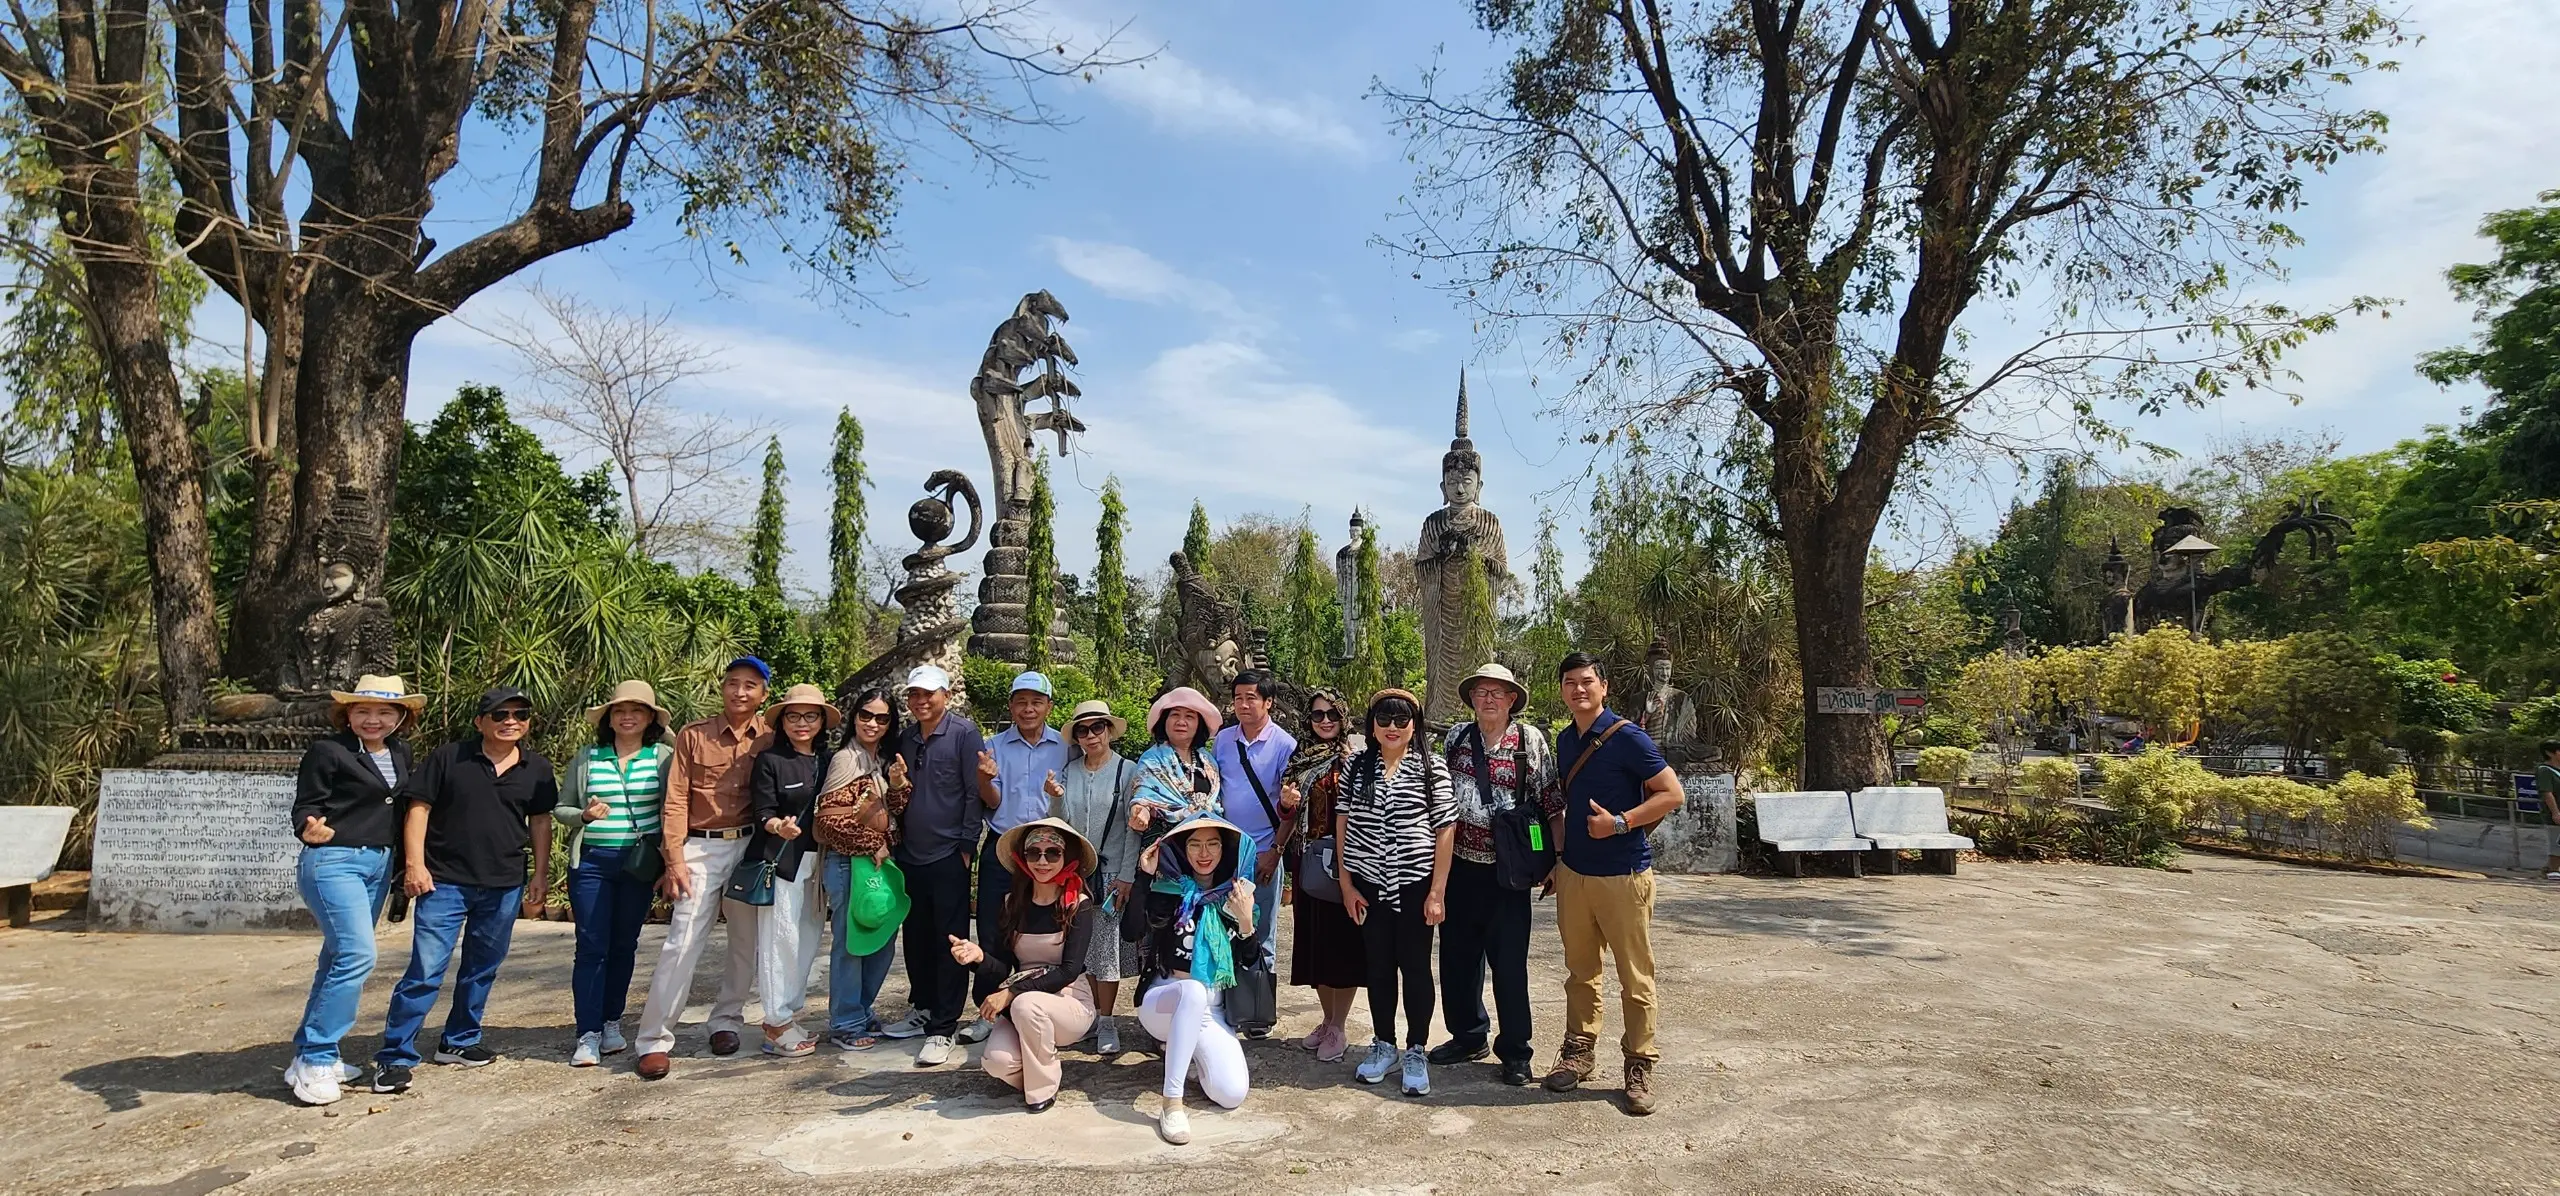 Tour tham quan Lào từ Đà Nẵng chất lượng đường bộ